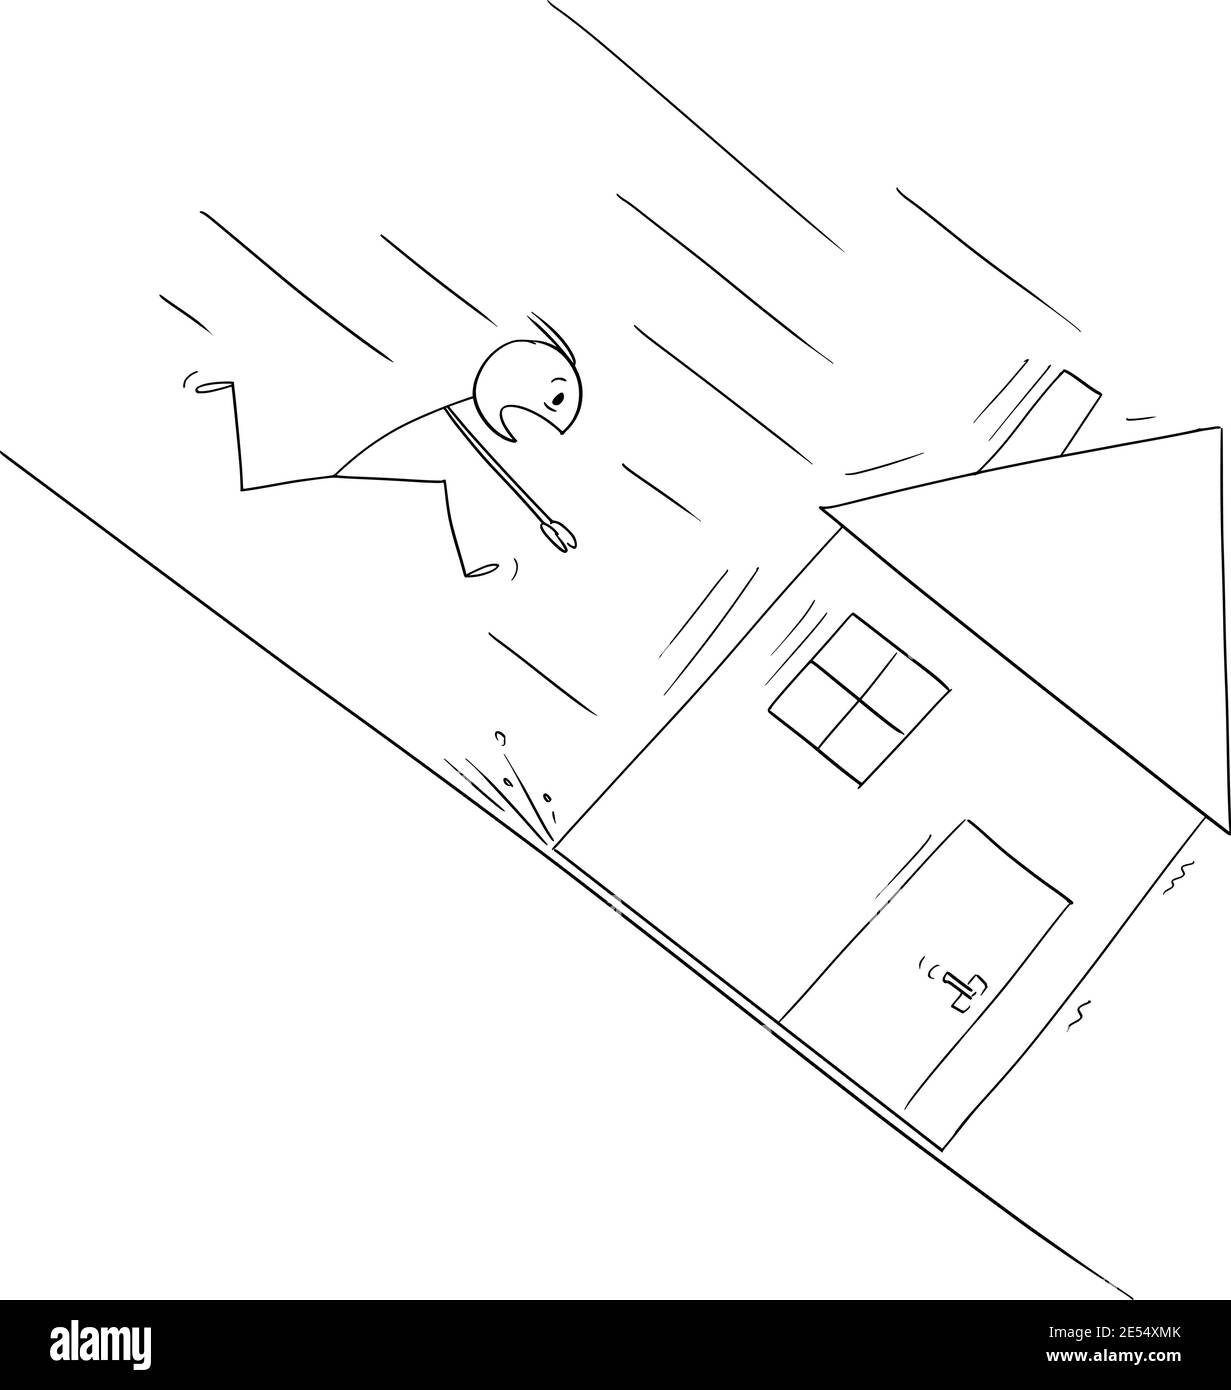 Mann läuft, um sein Haus bewegen bergab, Hypothek oder Darlehen Konzept, Vektor-Cartoon-Stick Figur oder Figur Illustration zu retten. Stock Vektor